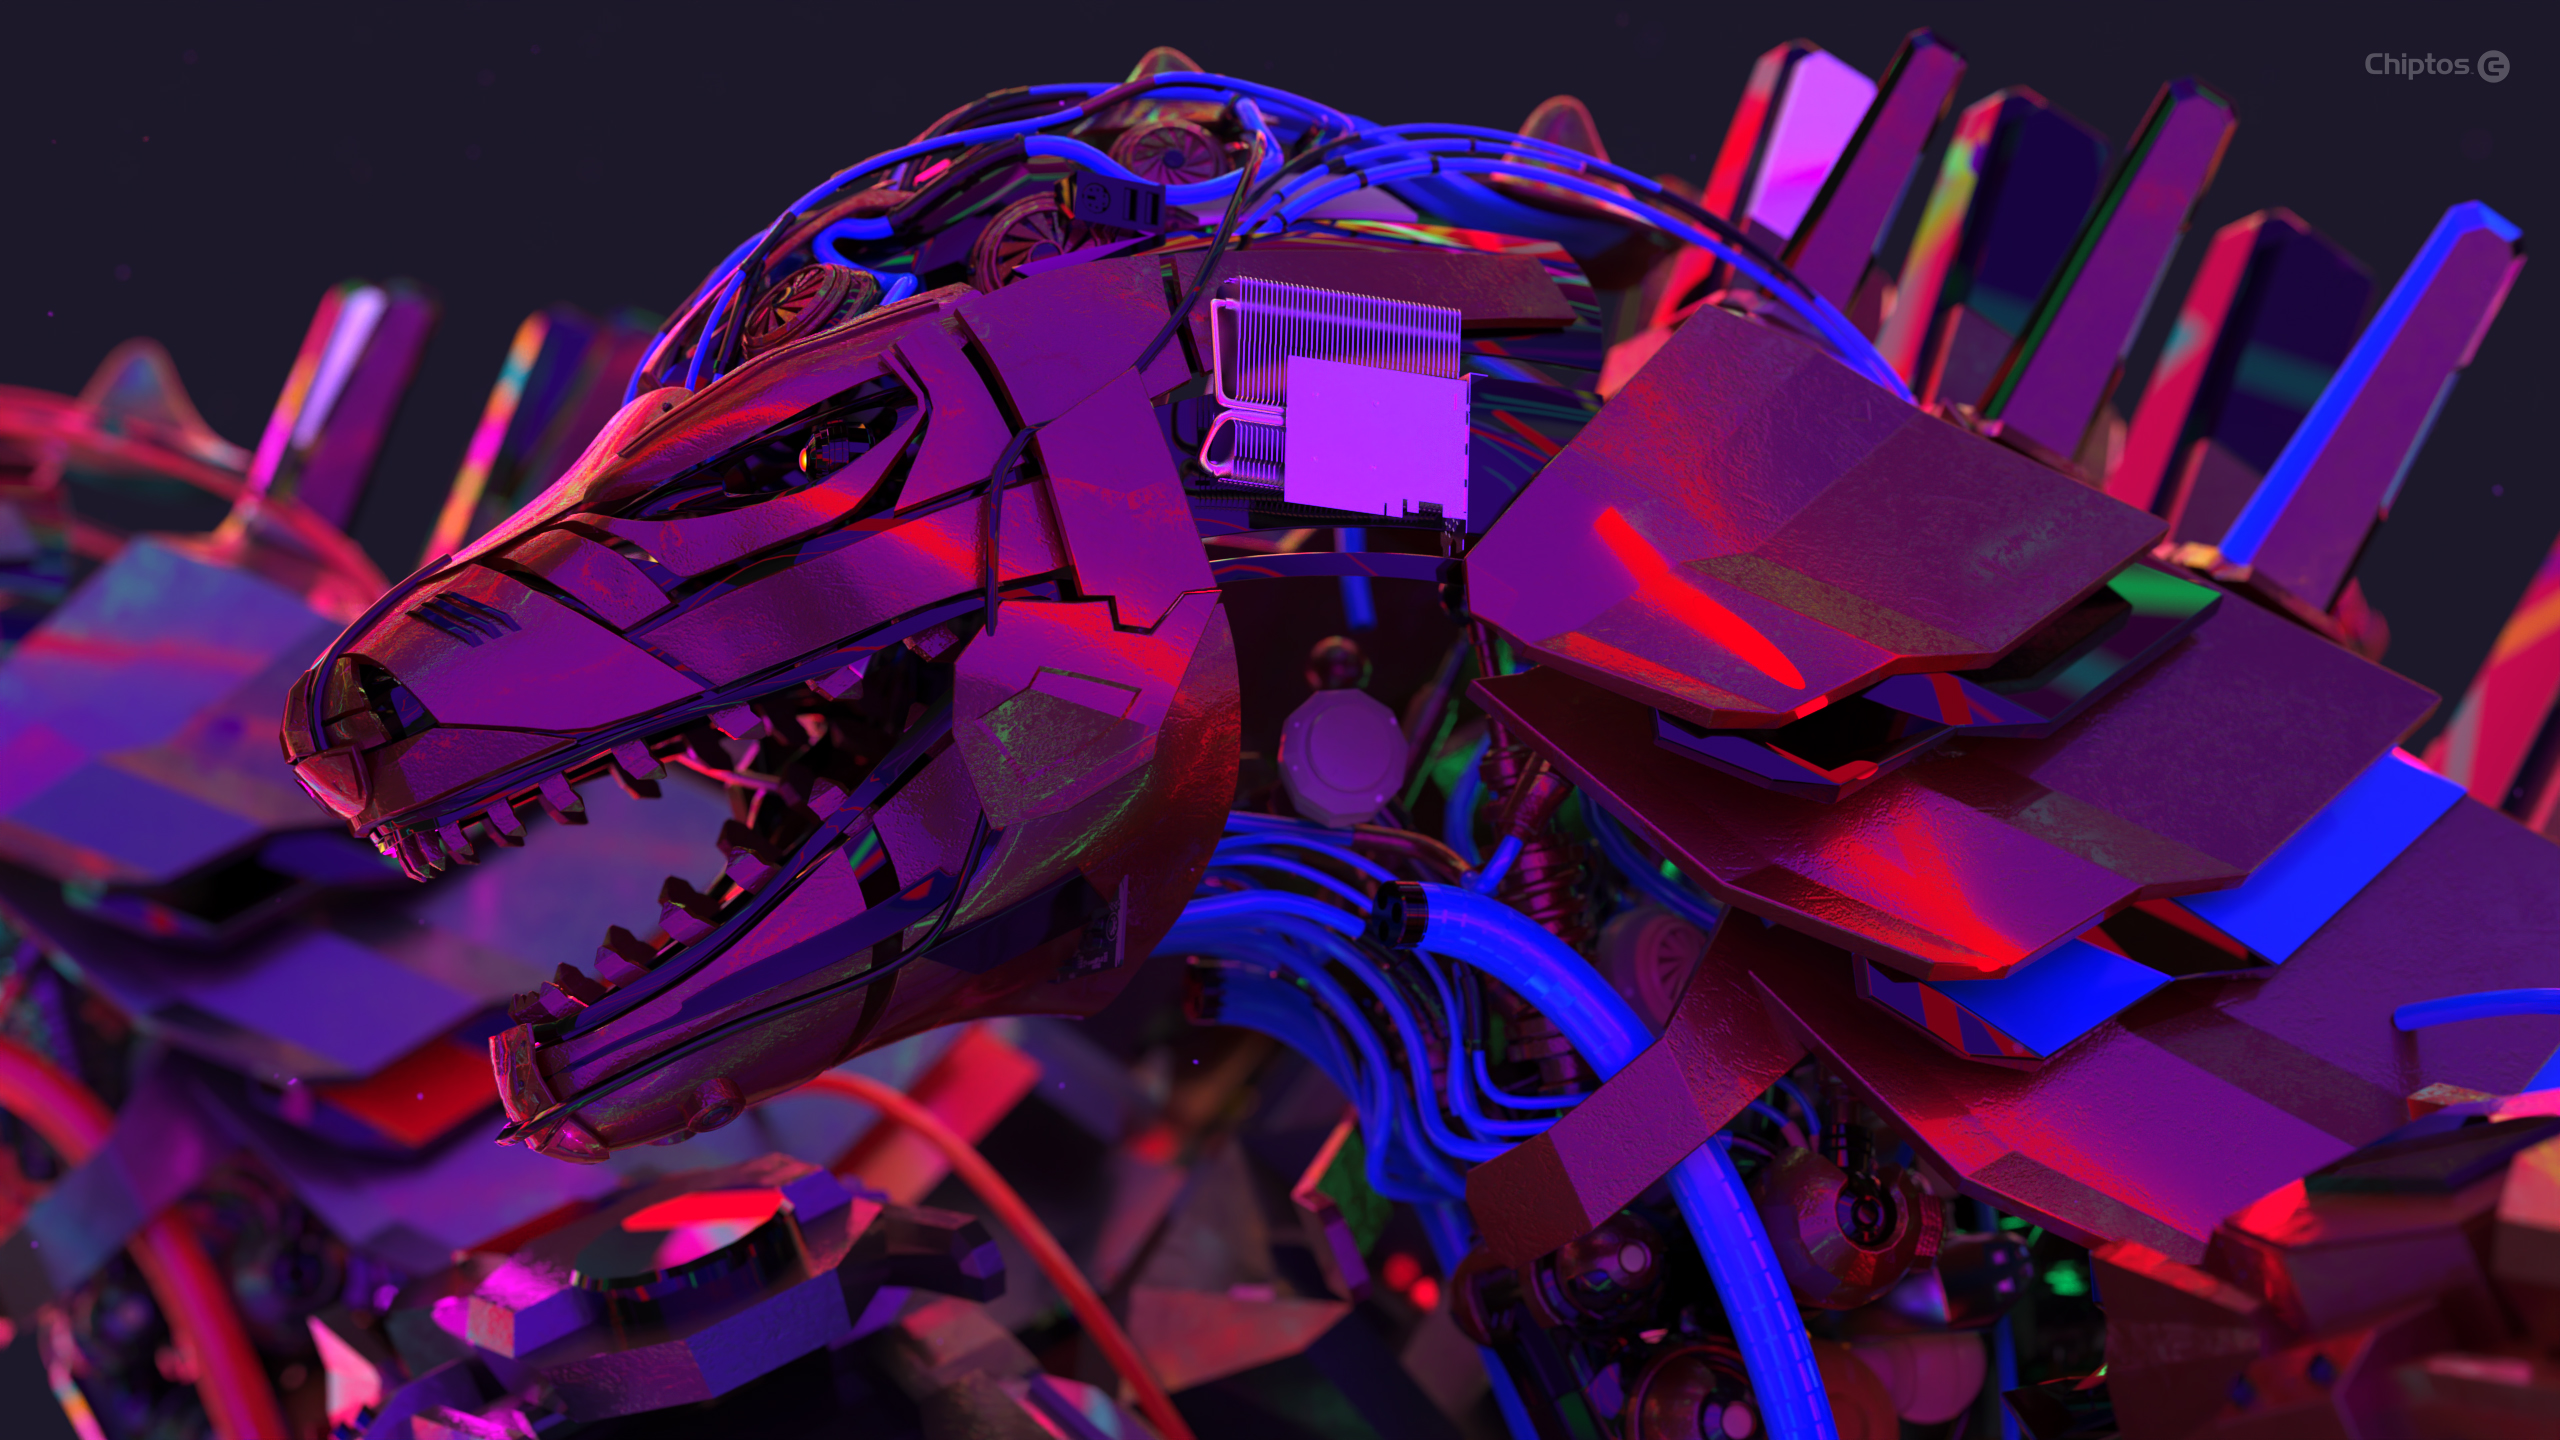 Robot Mech Animals Godzilla Mechagodzilla PC Build PC Master Race PC Gaming Digital Art Technology S 2560x1440